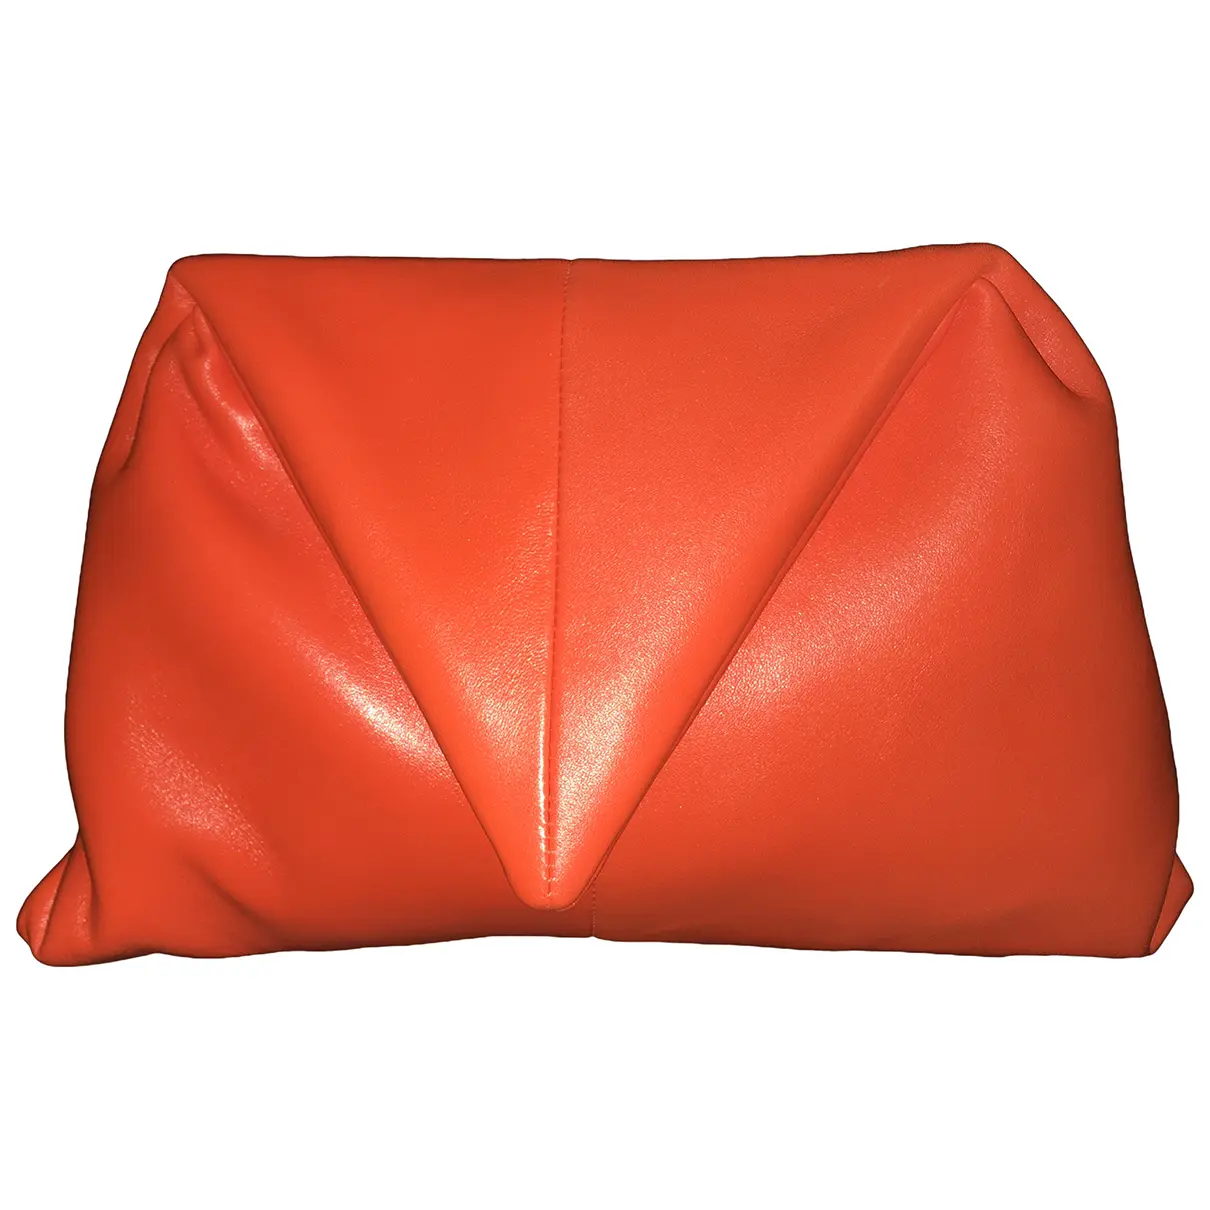 BV Trine leather clutch bag